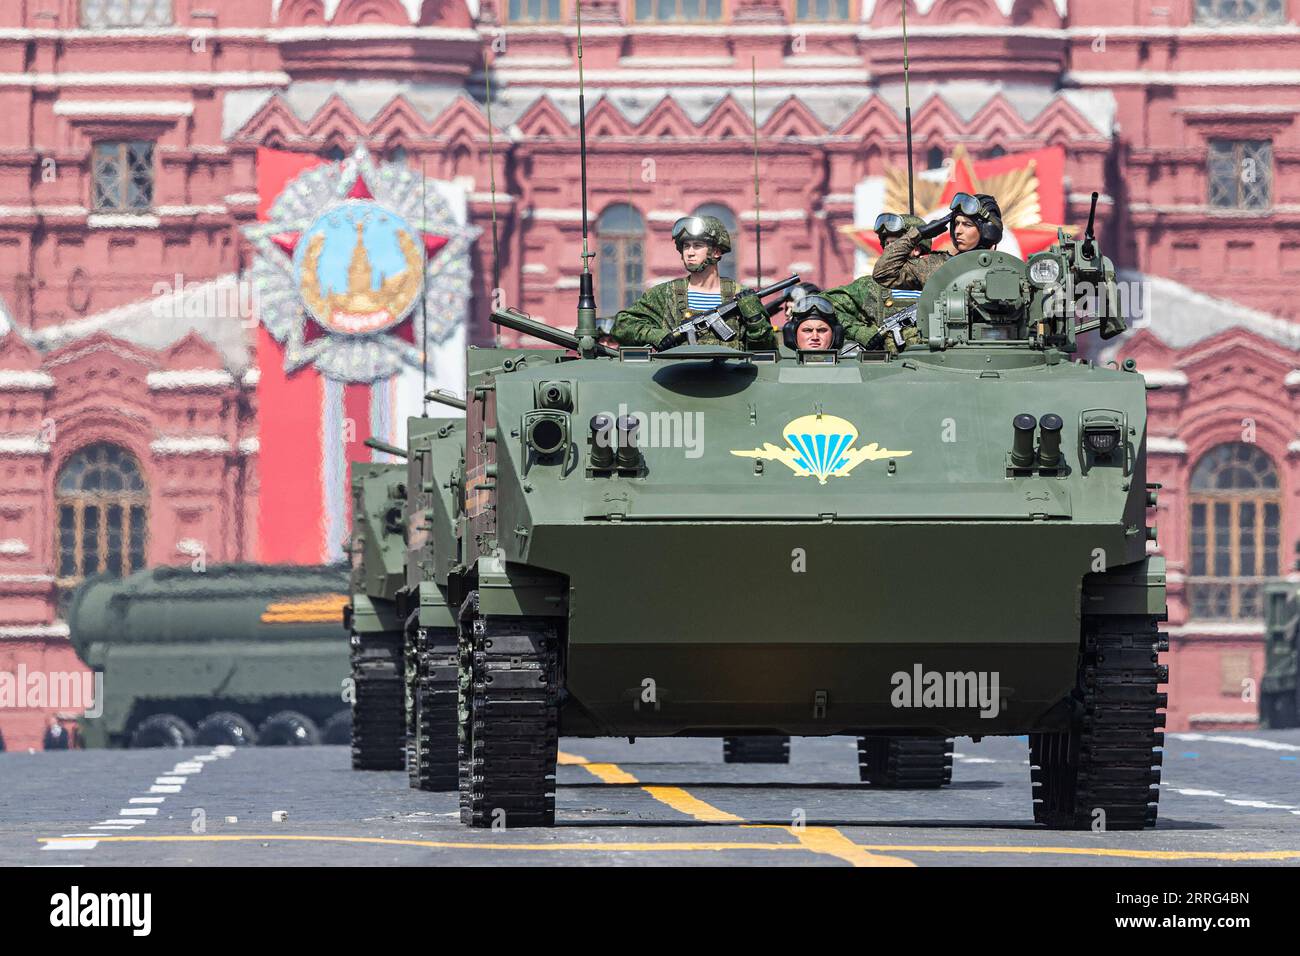 220507 -- MOSCA, 7 maggio 2022 -- veicoli da combattimento di fanteria sono visti sulla Piazza Rossa durante una prova della parata del giorno della Vittoria a Mosca, in Russia, 7 maggio 2022. RUSSIA-MOSCA-GIORNO DELLA VITTORIA PARATA-PROVA BAIXXUEQI PUBLICATIONXNOTXINXCHN Foto Stock